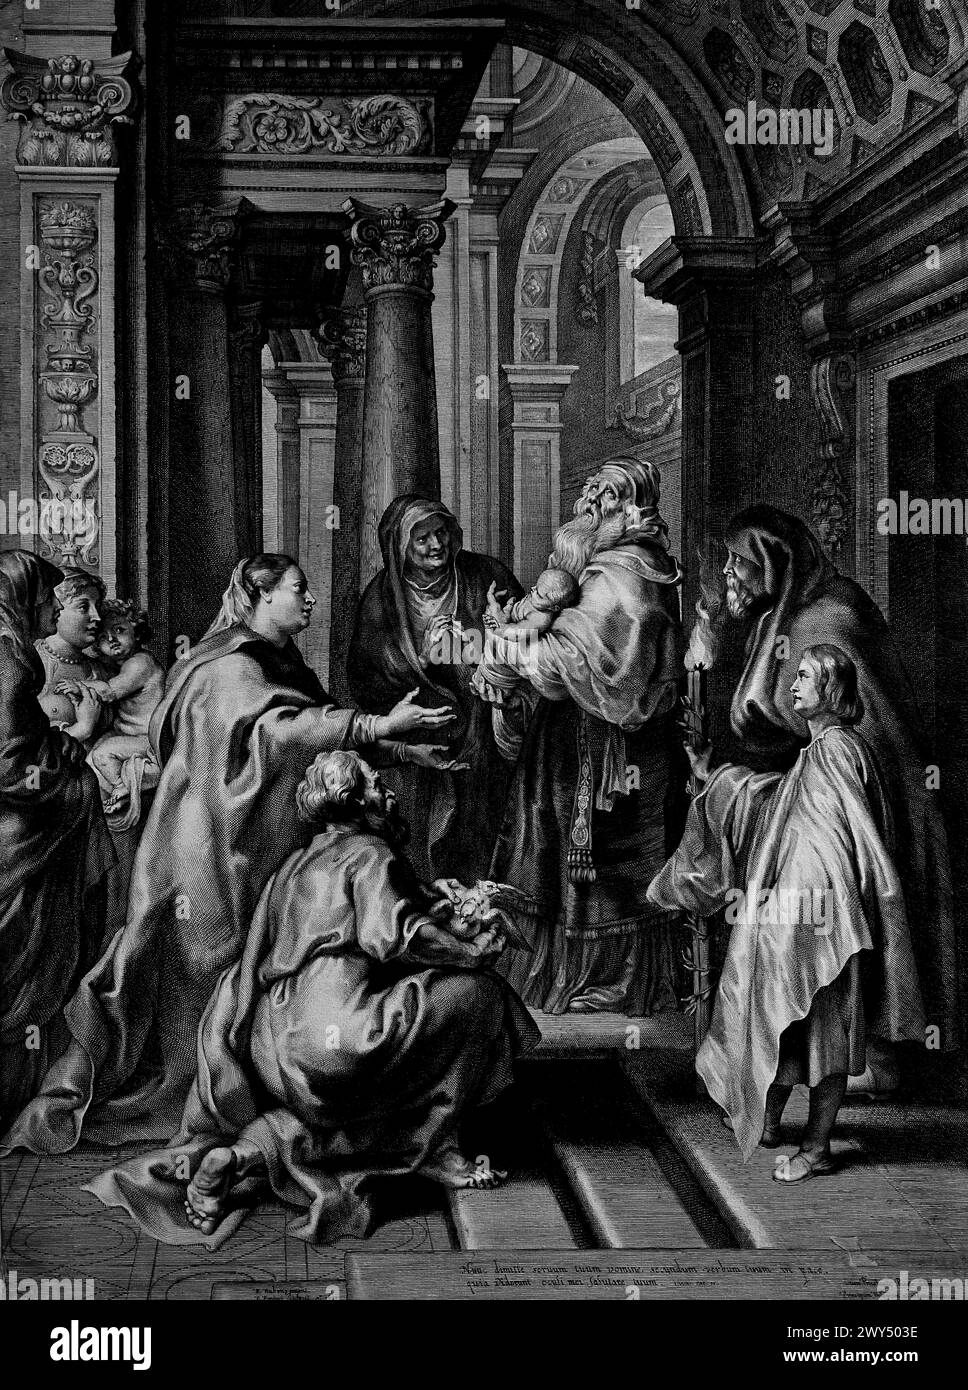 Presentatie in de tempel 1638 Peter Paul Rubens von Paulus Pontius (Mai 1603 – 16. Januar 1658) war ein flämischer Kupferstecher und Maler. Er arbeitete mit den Künstlern Peter Paul Rubens und Anthony van Dyck Royal Museum of Fine Arts in Antwerpen, Belgien, Belgien. Stockfoto